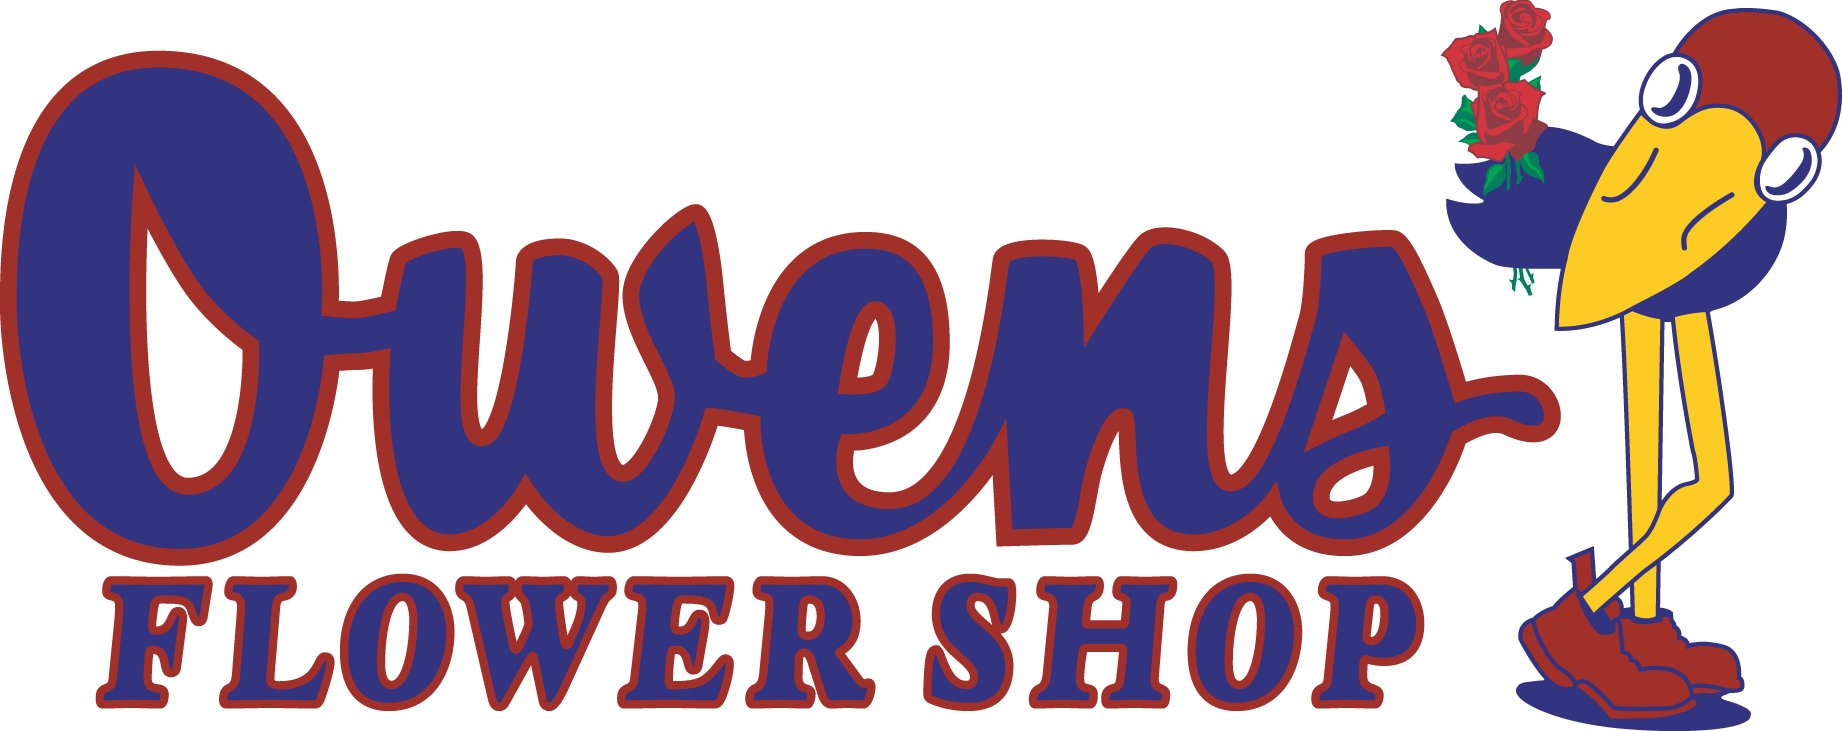 Owens logo.jpg